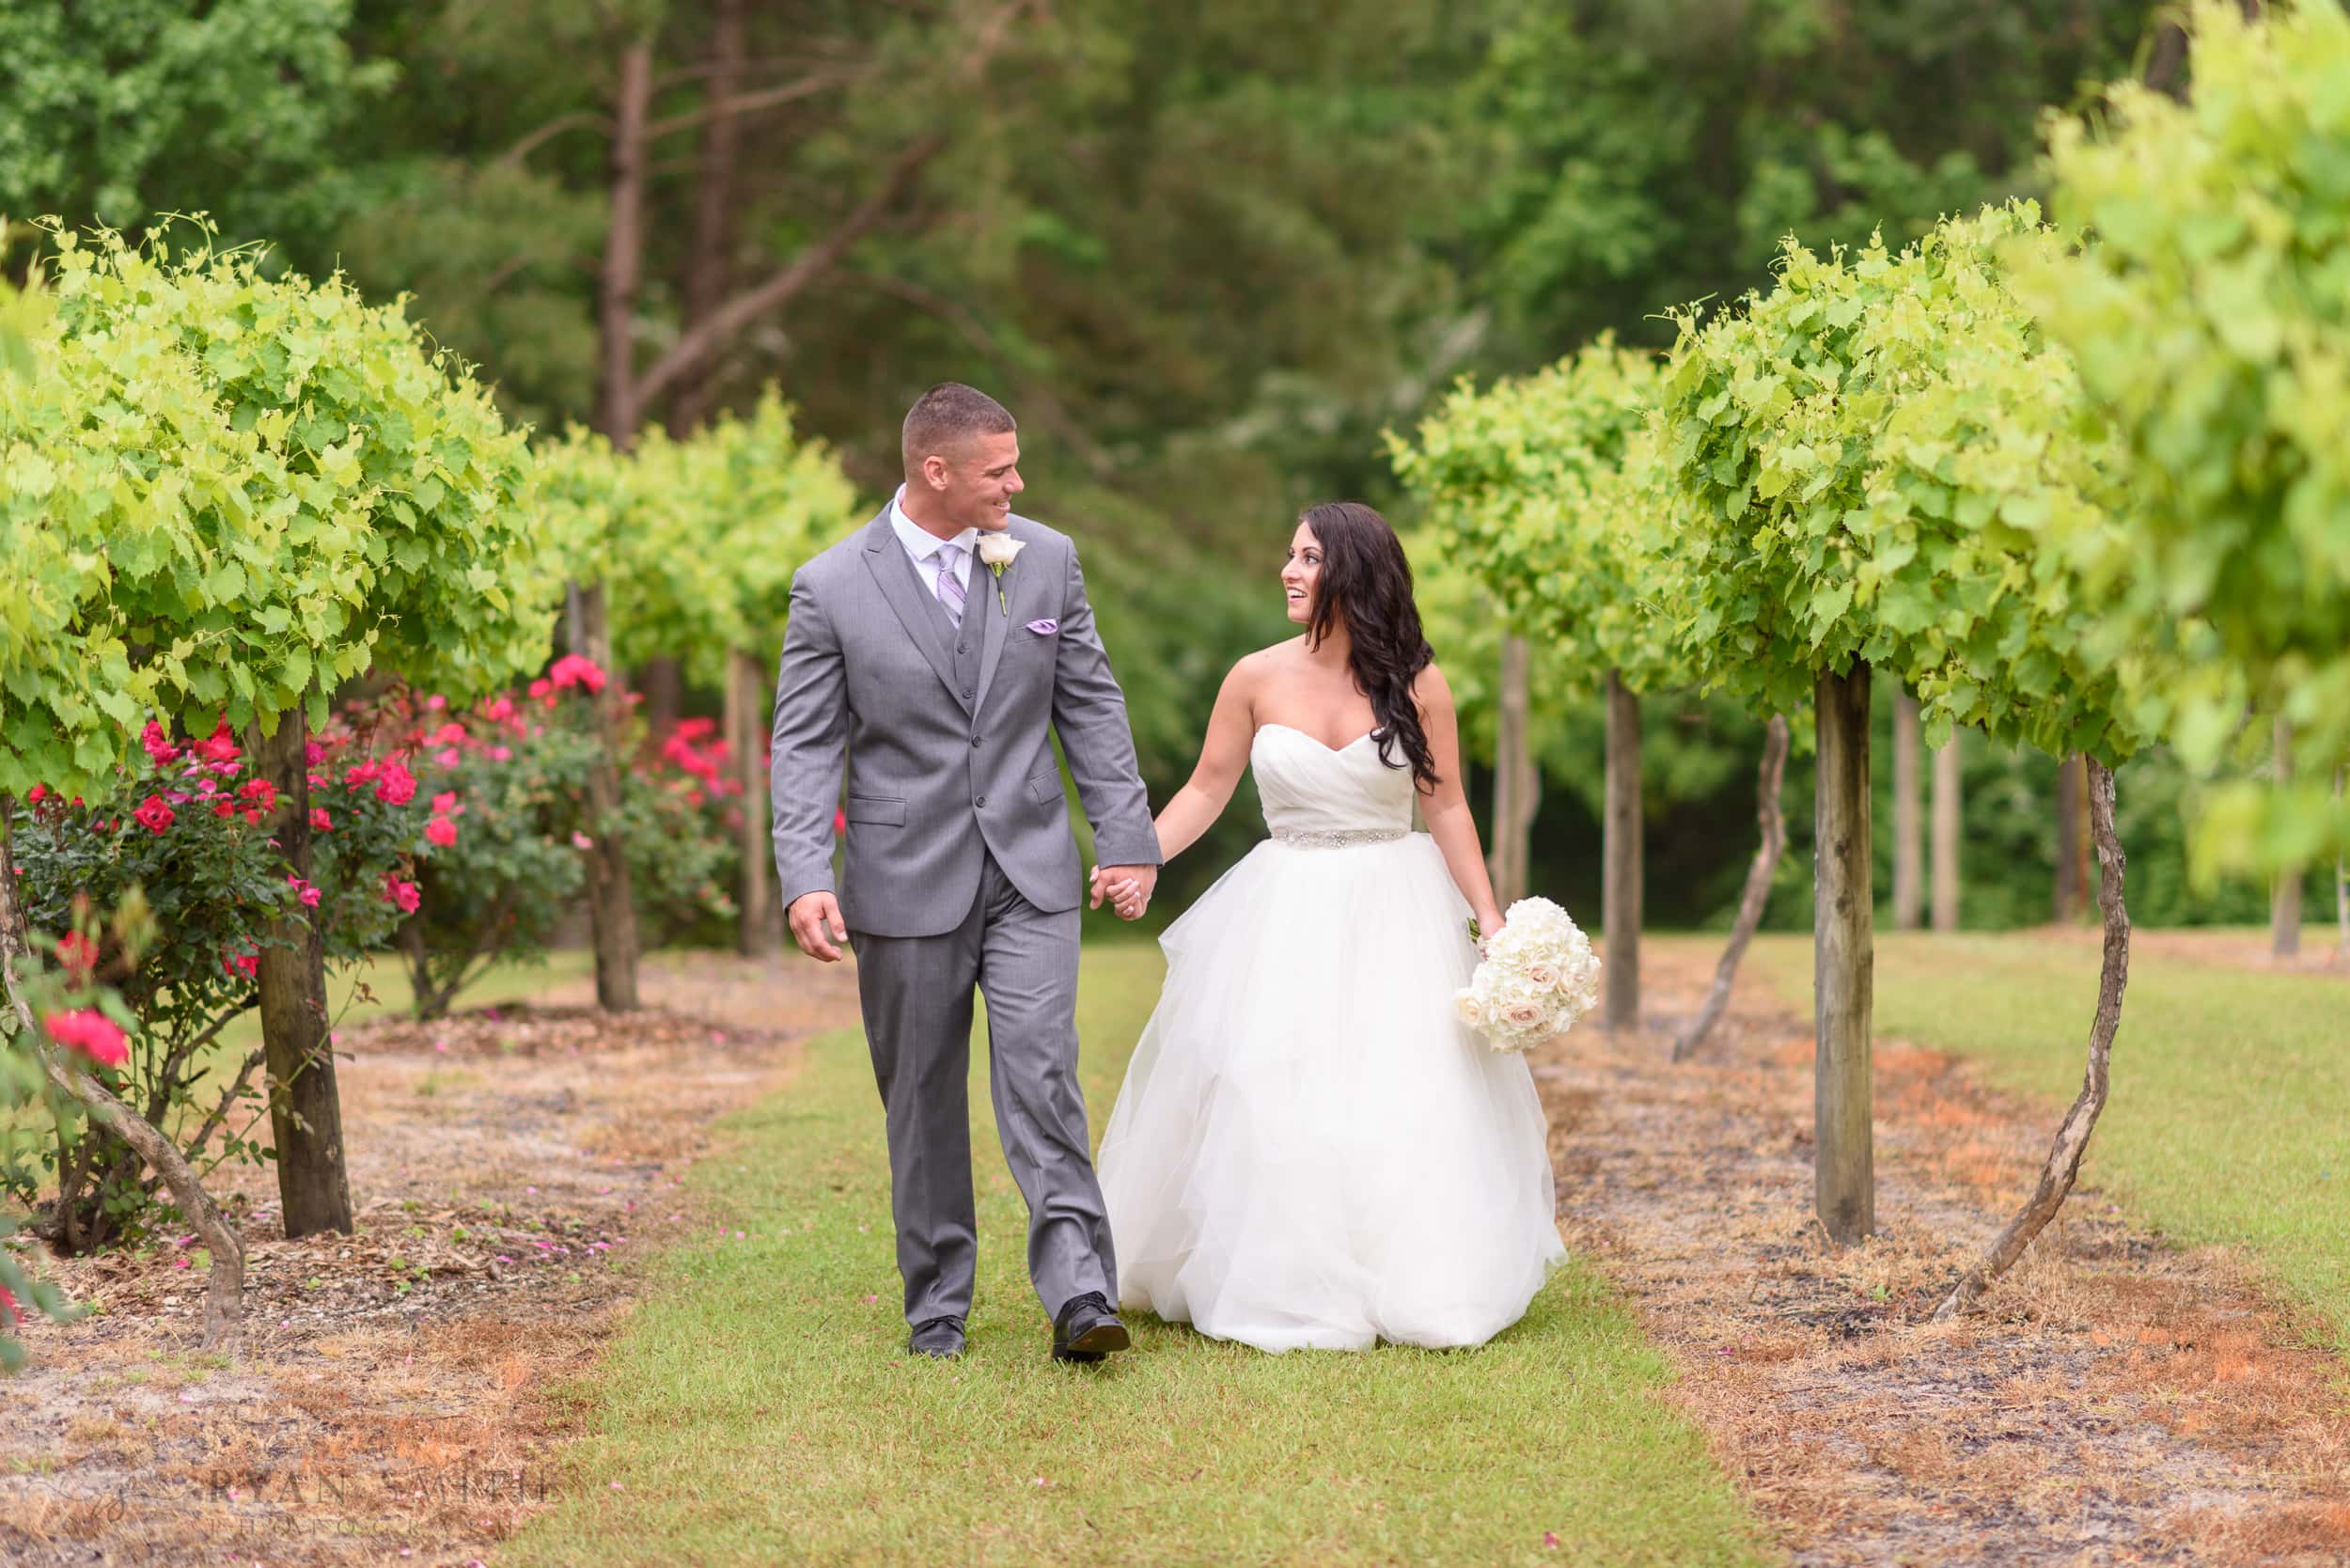 Bride and groom walking together in the grape vines - La Belle Amie Vineyard